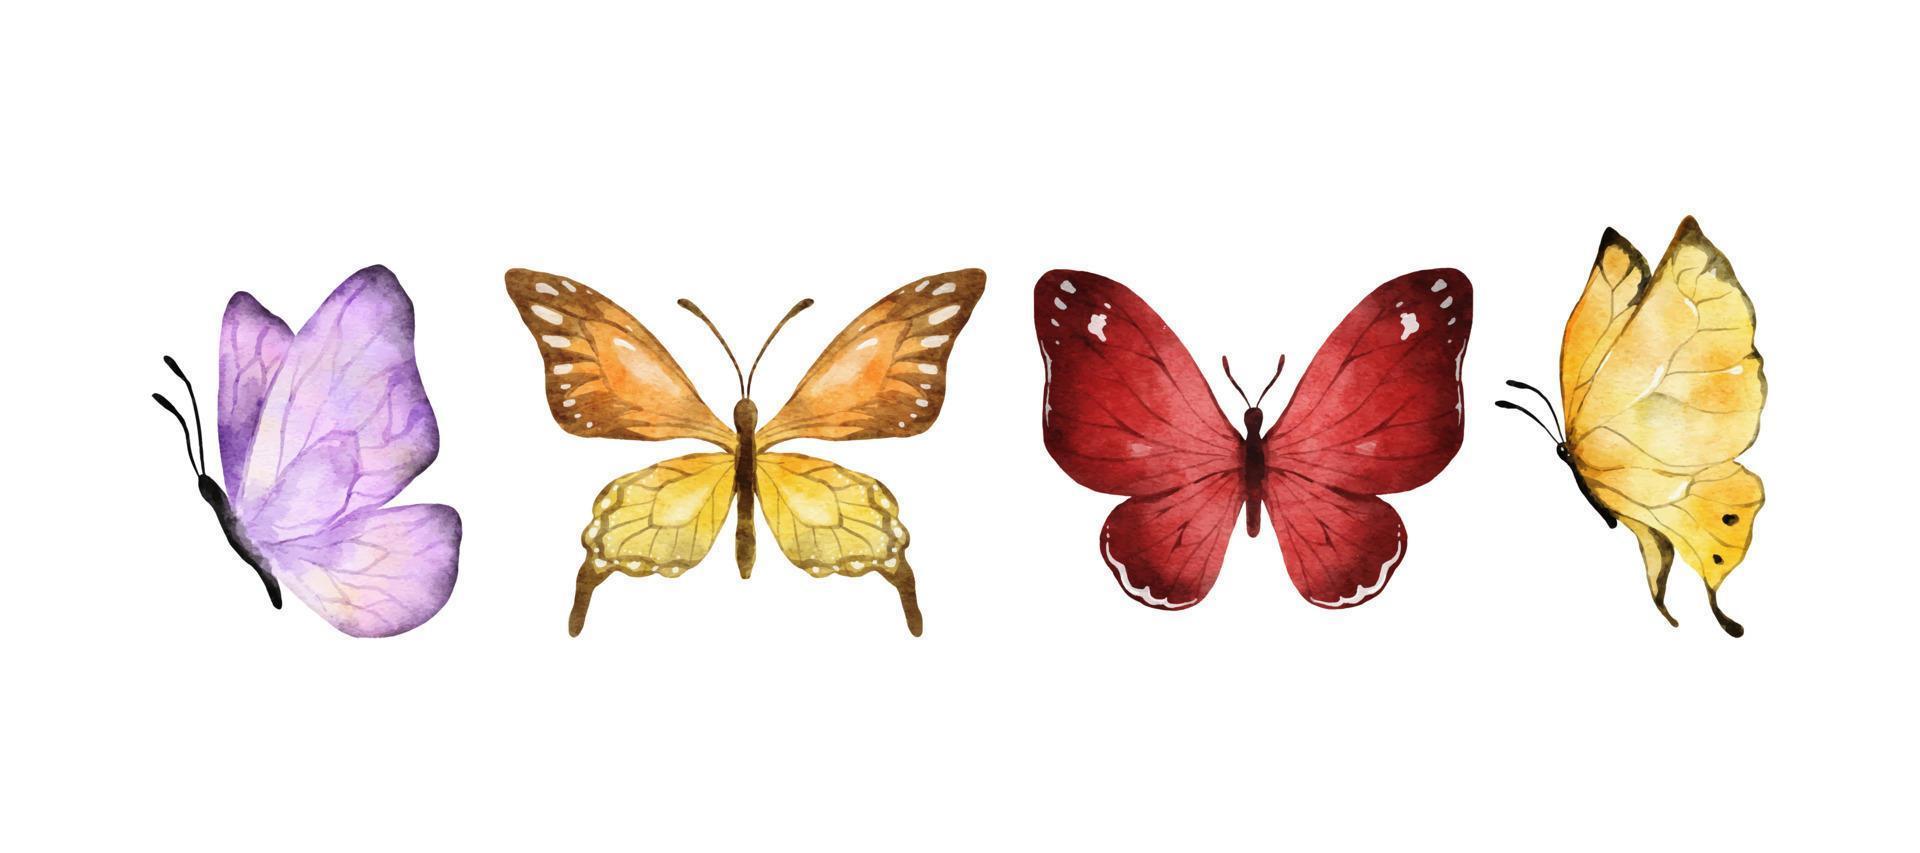 acuarela de mariposas de colores aislado sobre fondo blanco. mariposa morada, naranja, amarilla y roja. Ilustración de vector de animales de primavera